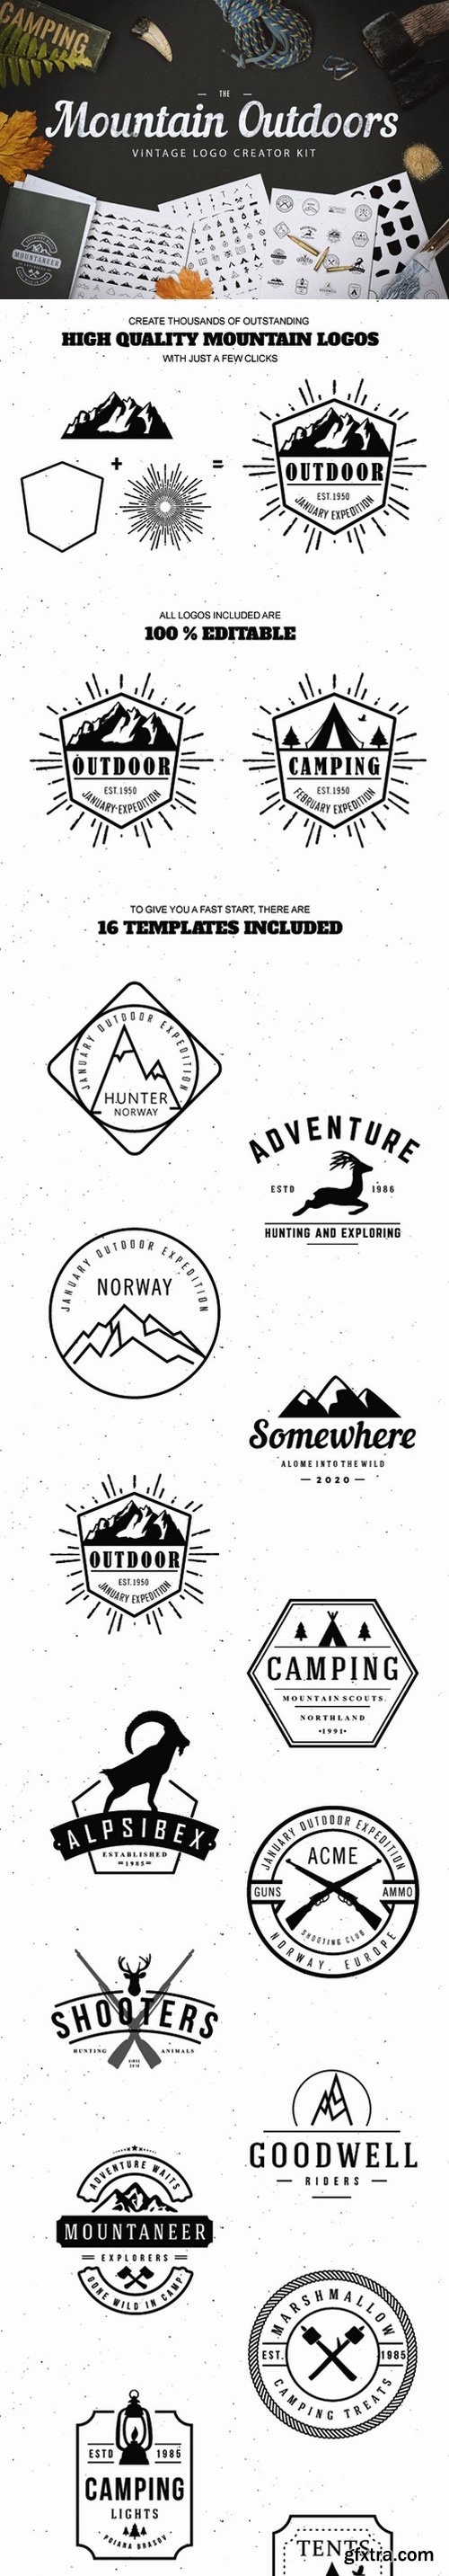 CM - Mountain Outdoor Vintage Logo Kit 503127